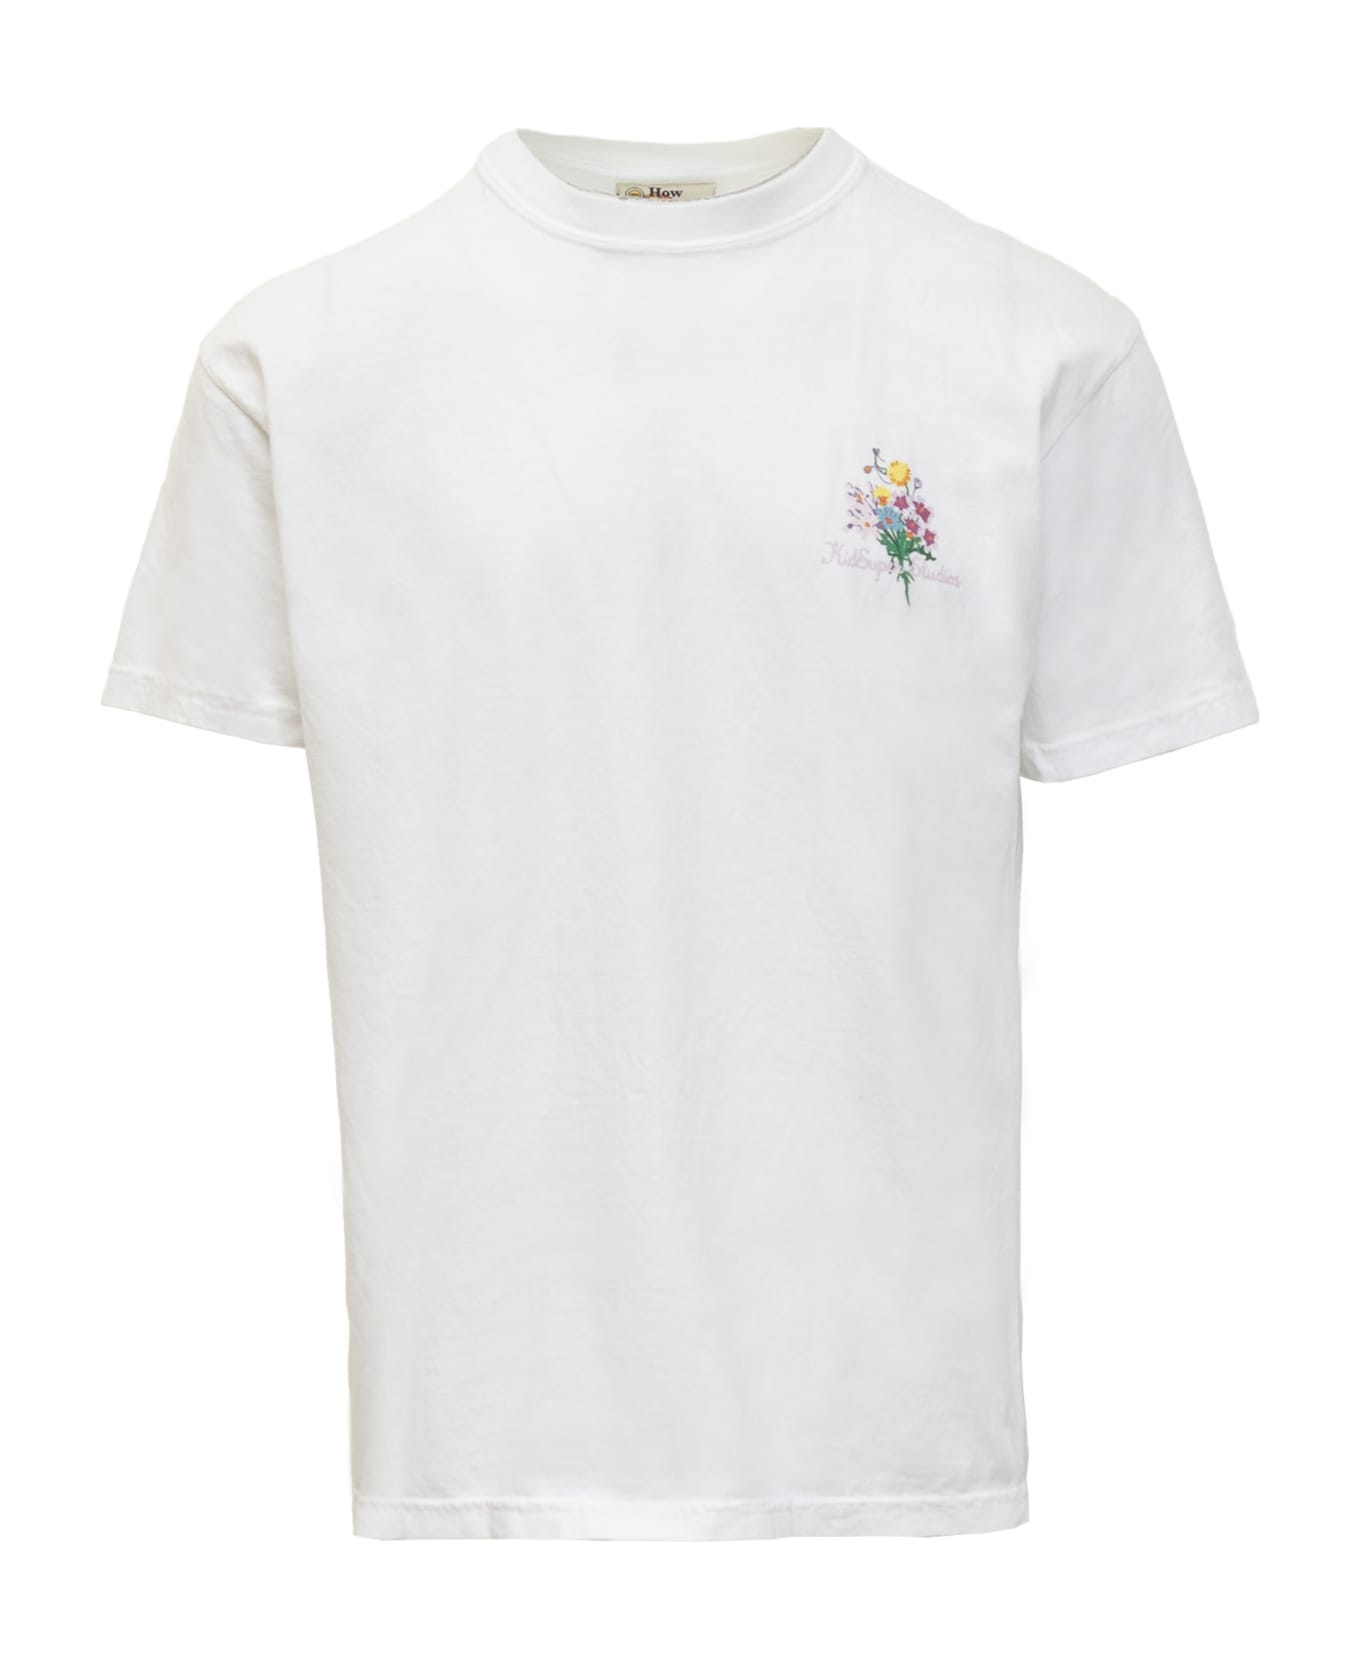 Kidsuper Growing Ideas T-shirt - WHITE